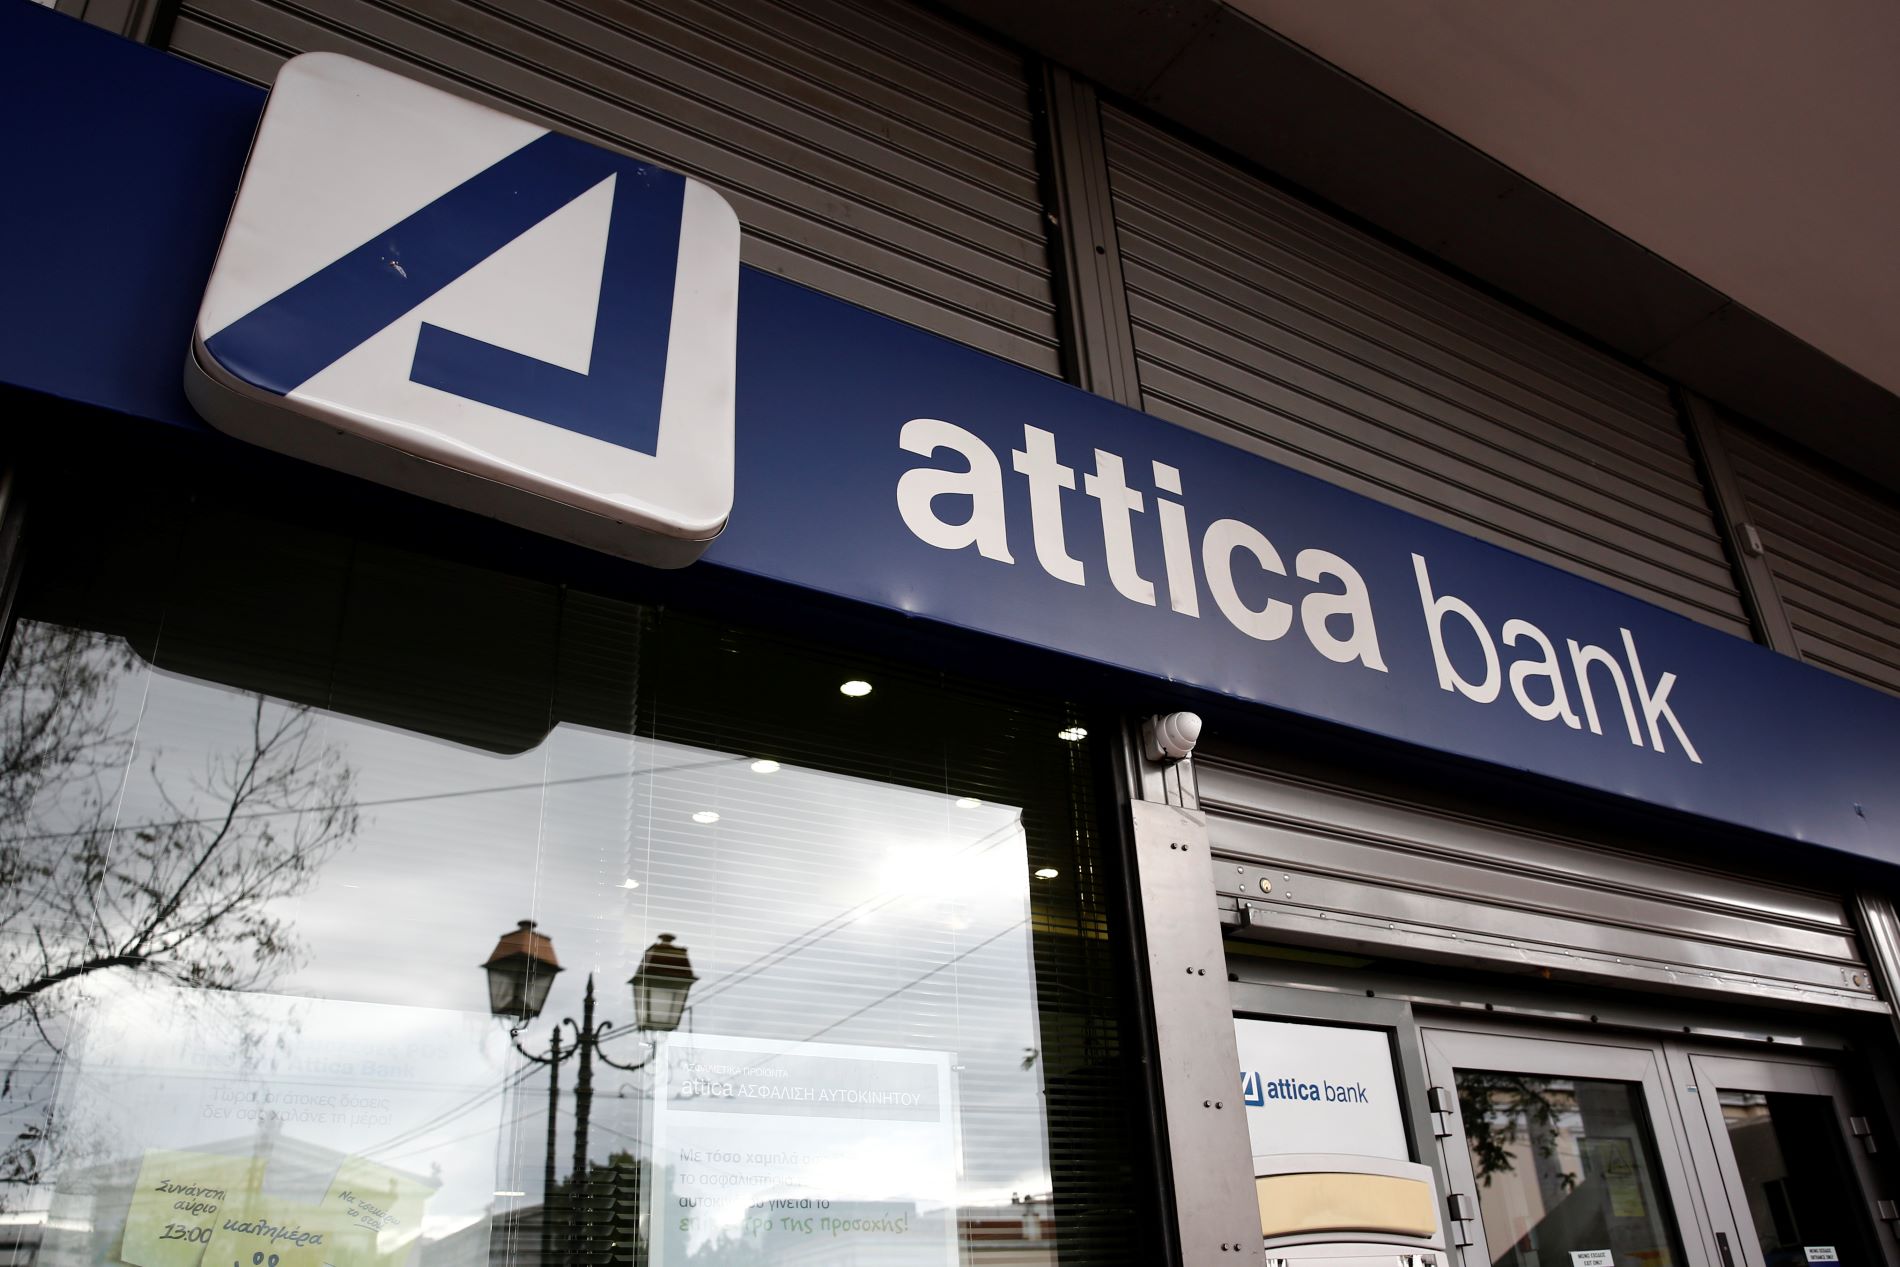 ΣΥΡΙΖΑ για Attica Bank: Οι λεπτομέρειες της συμφωνίας είναι ακόμη χειρότερες - Ο Μητσοτάκης θα λογοδοτήσει